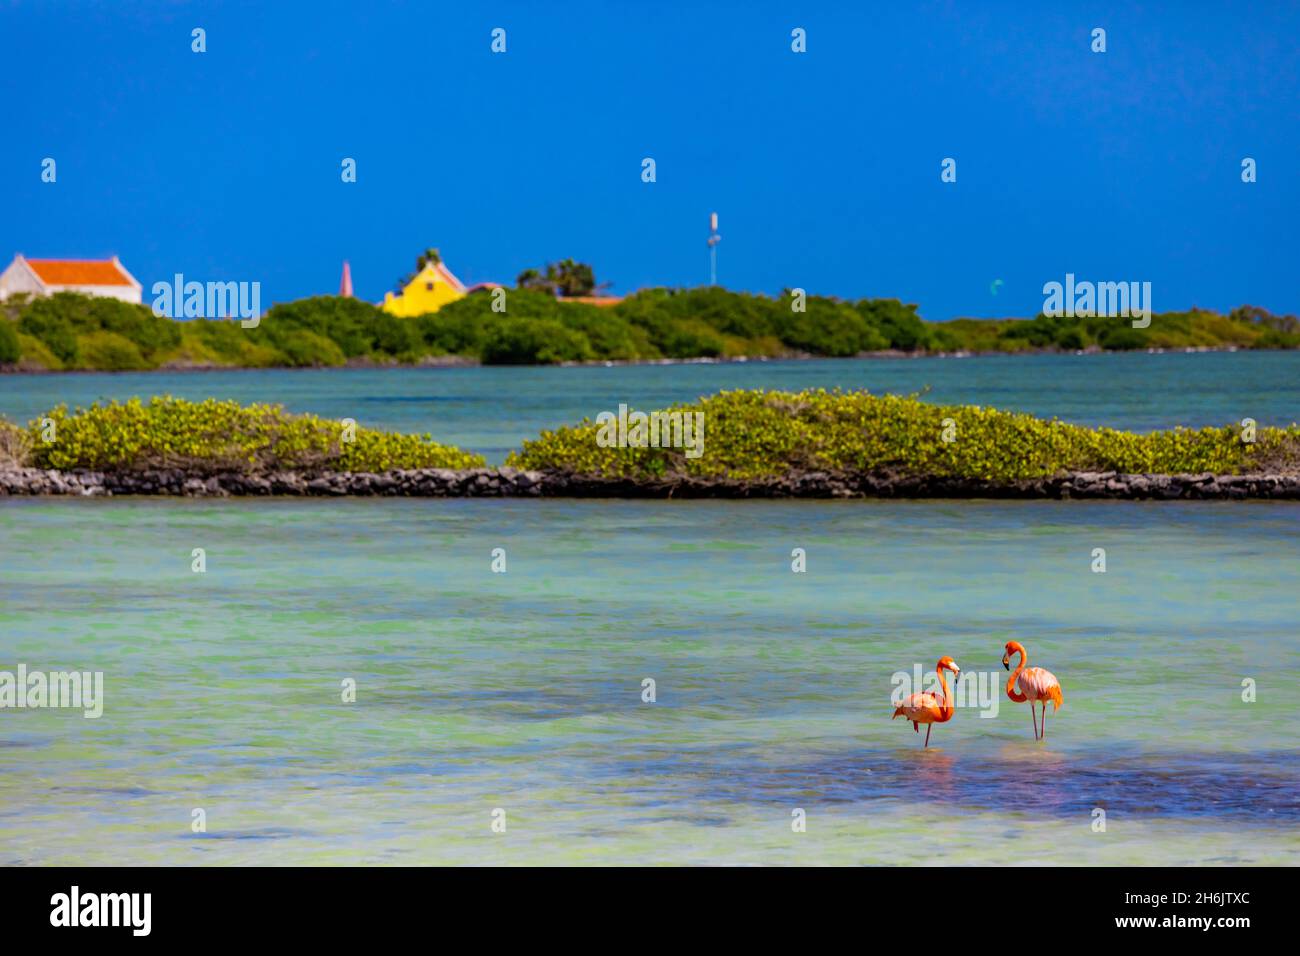 Flamants se prélassant dans leur habitat naturel, Bonaire, Antilles néerlandaises, Caraïbes, Amérique centrale Banque D'Images